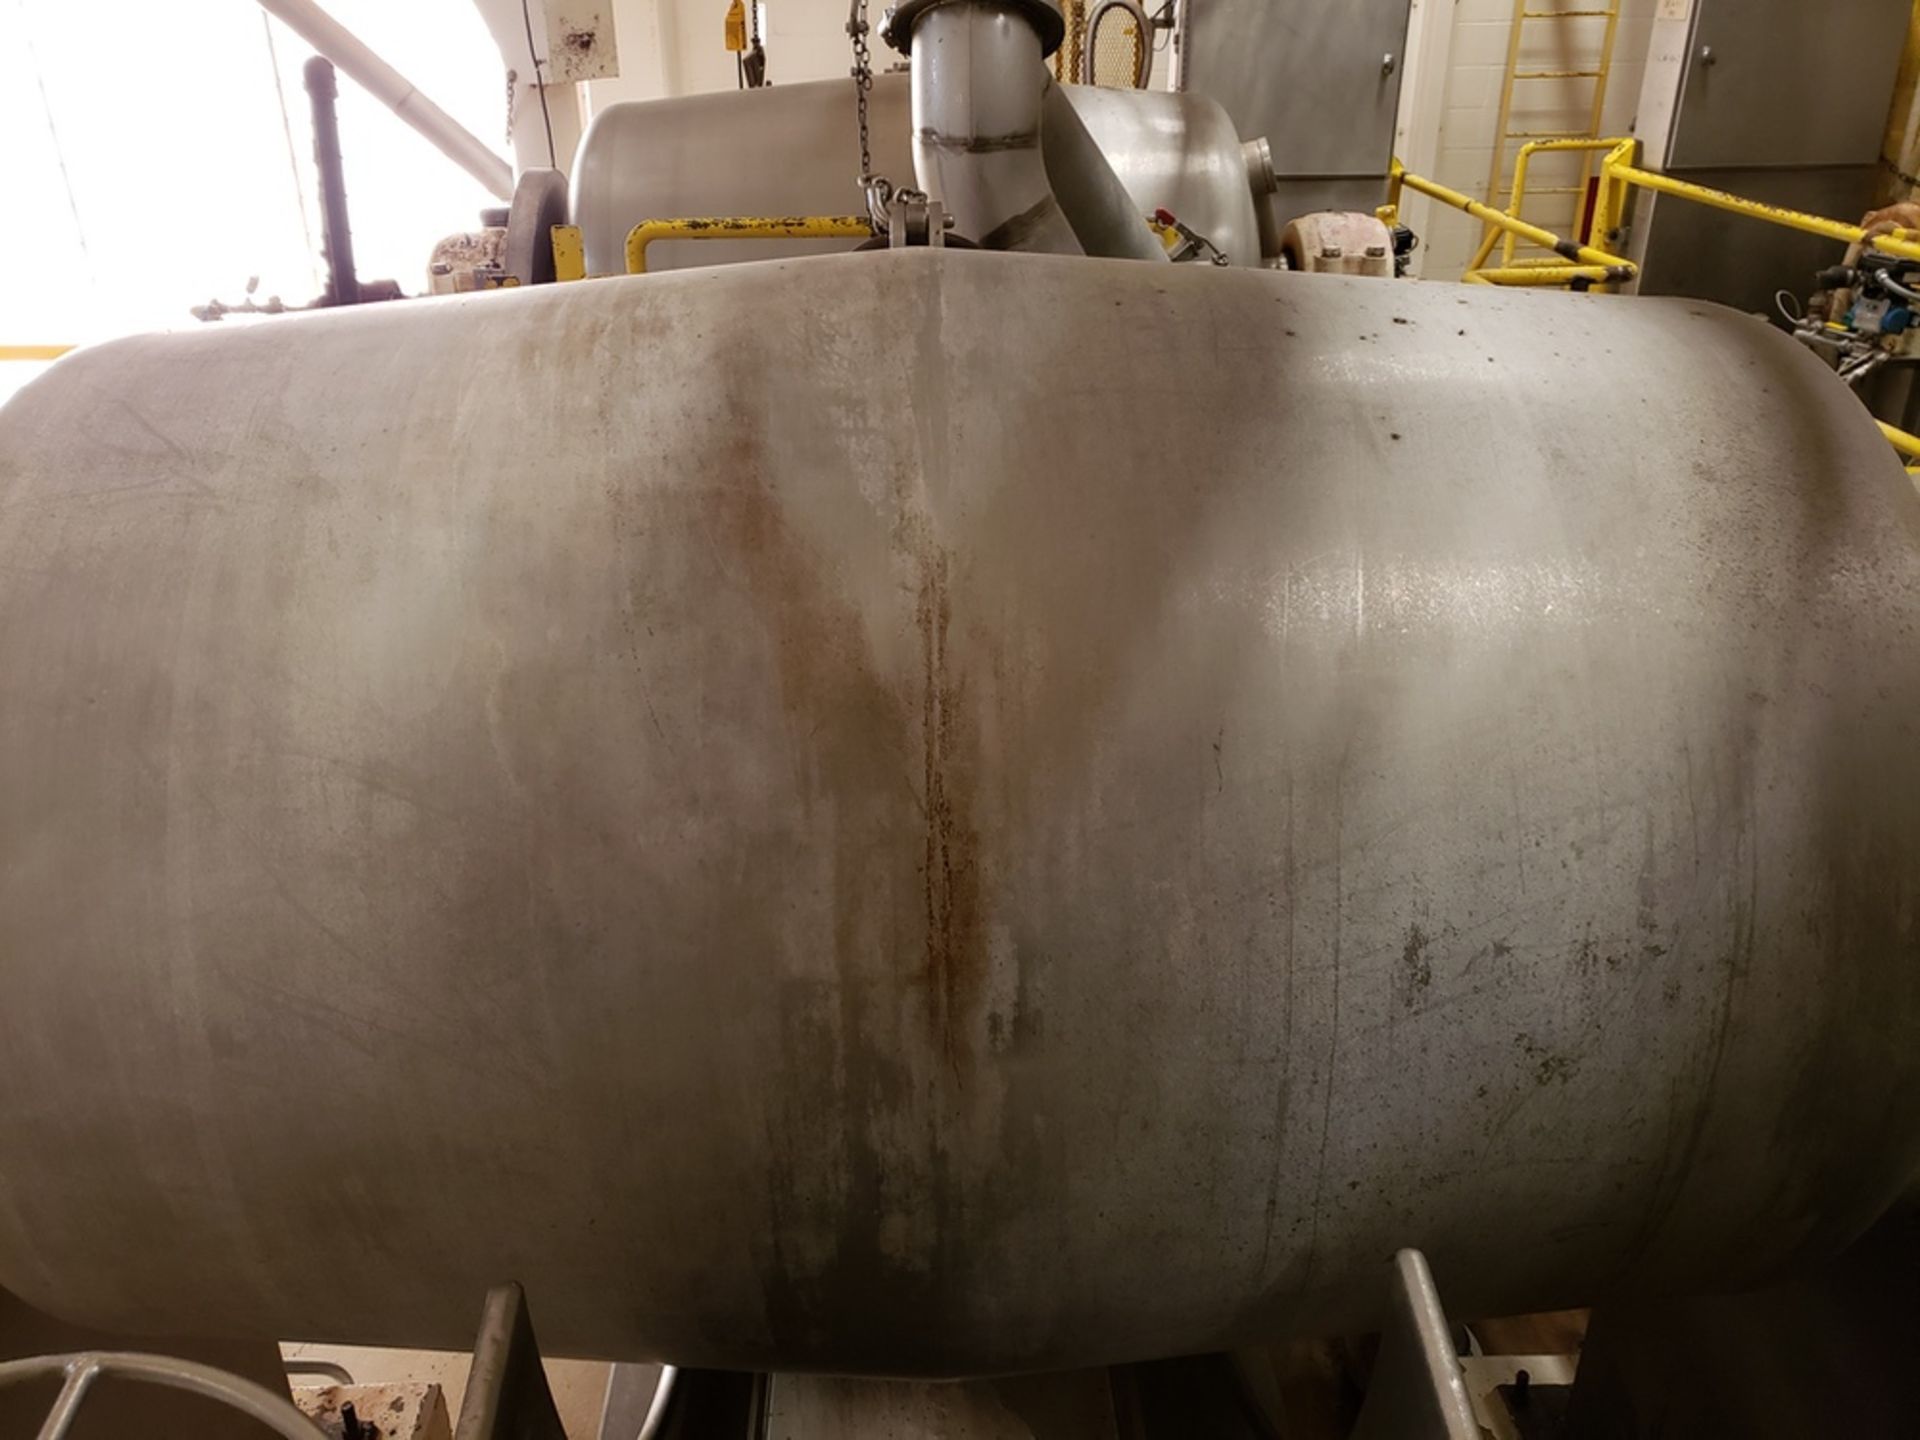 Hamilton 565 Gallon Rotary Steam Pressure Cooker | Rig Fee: $2100